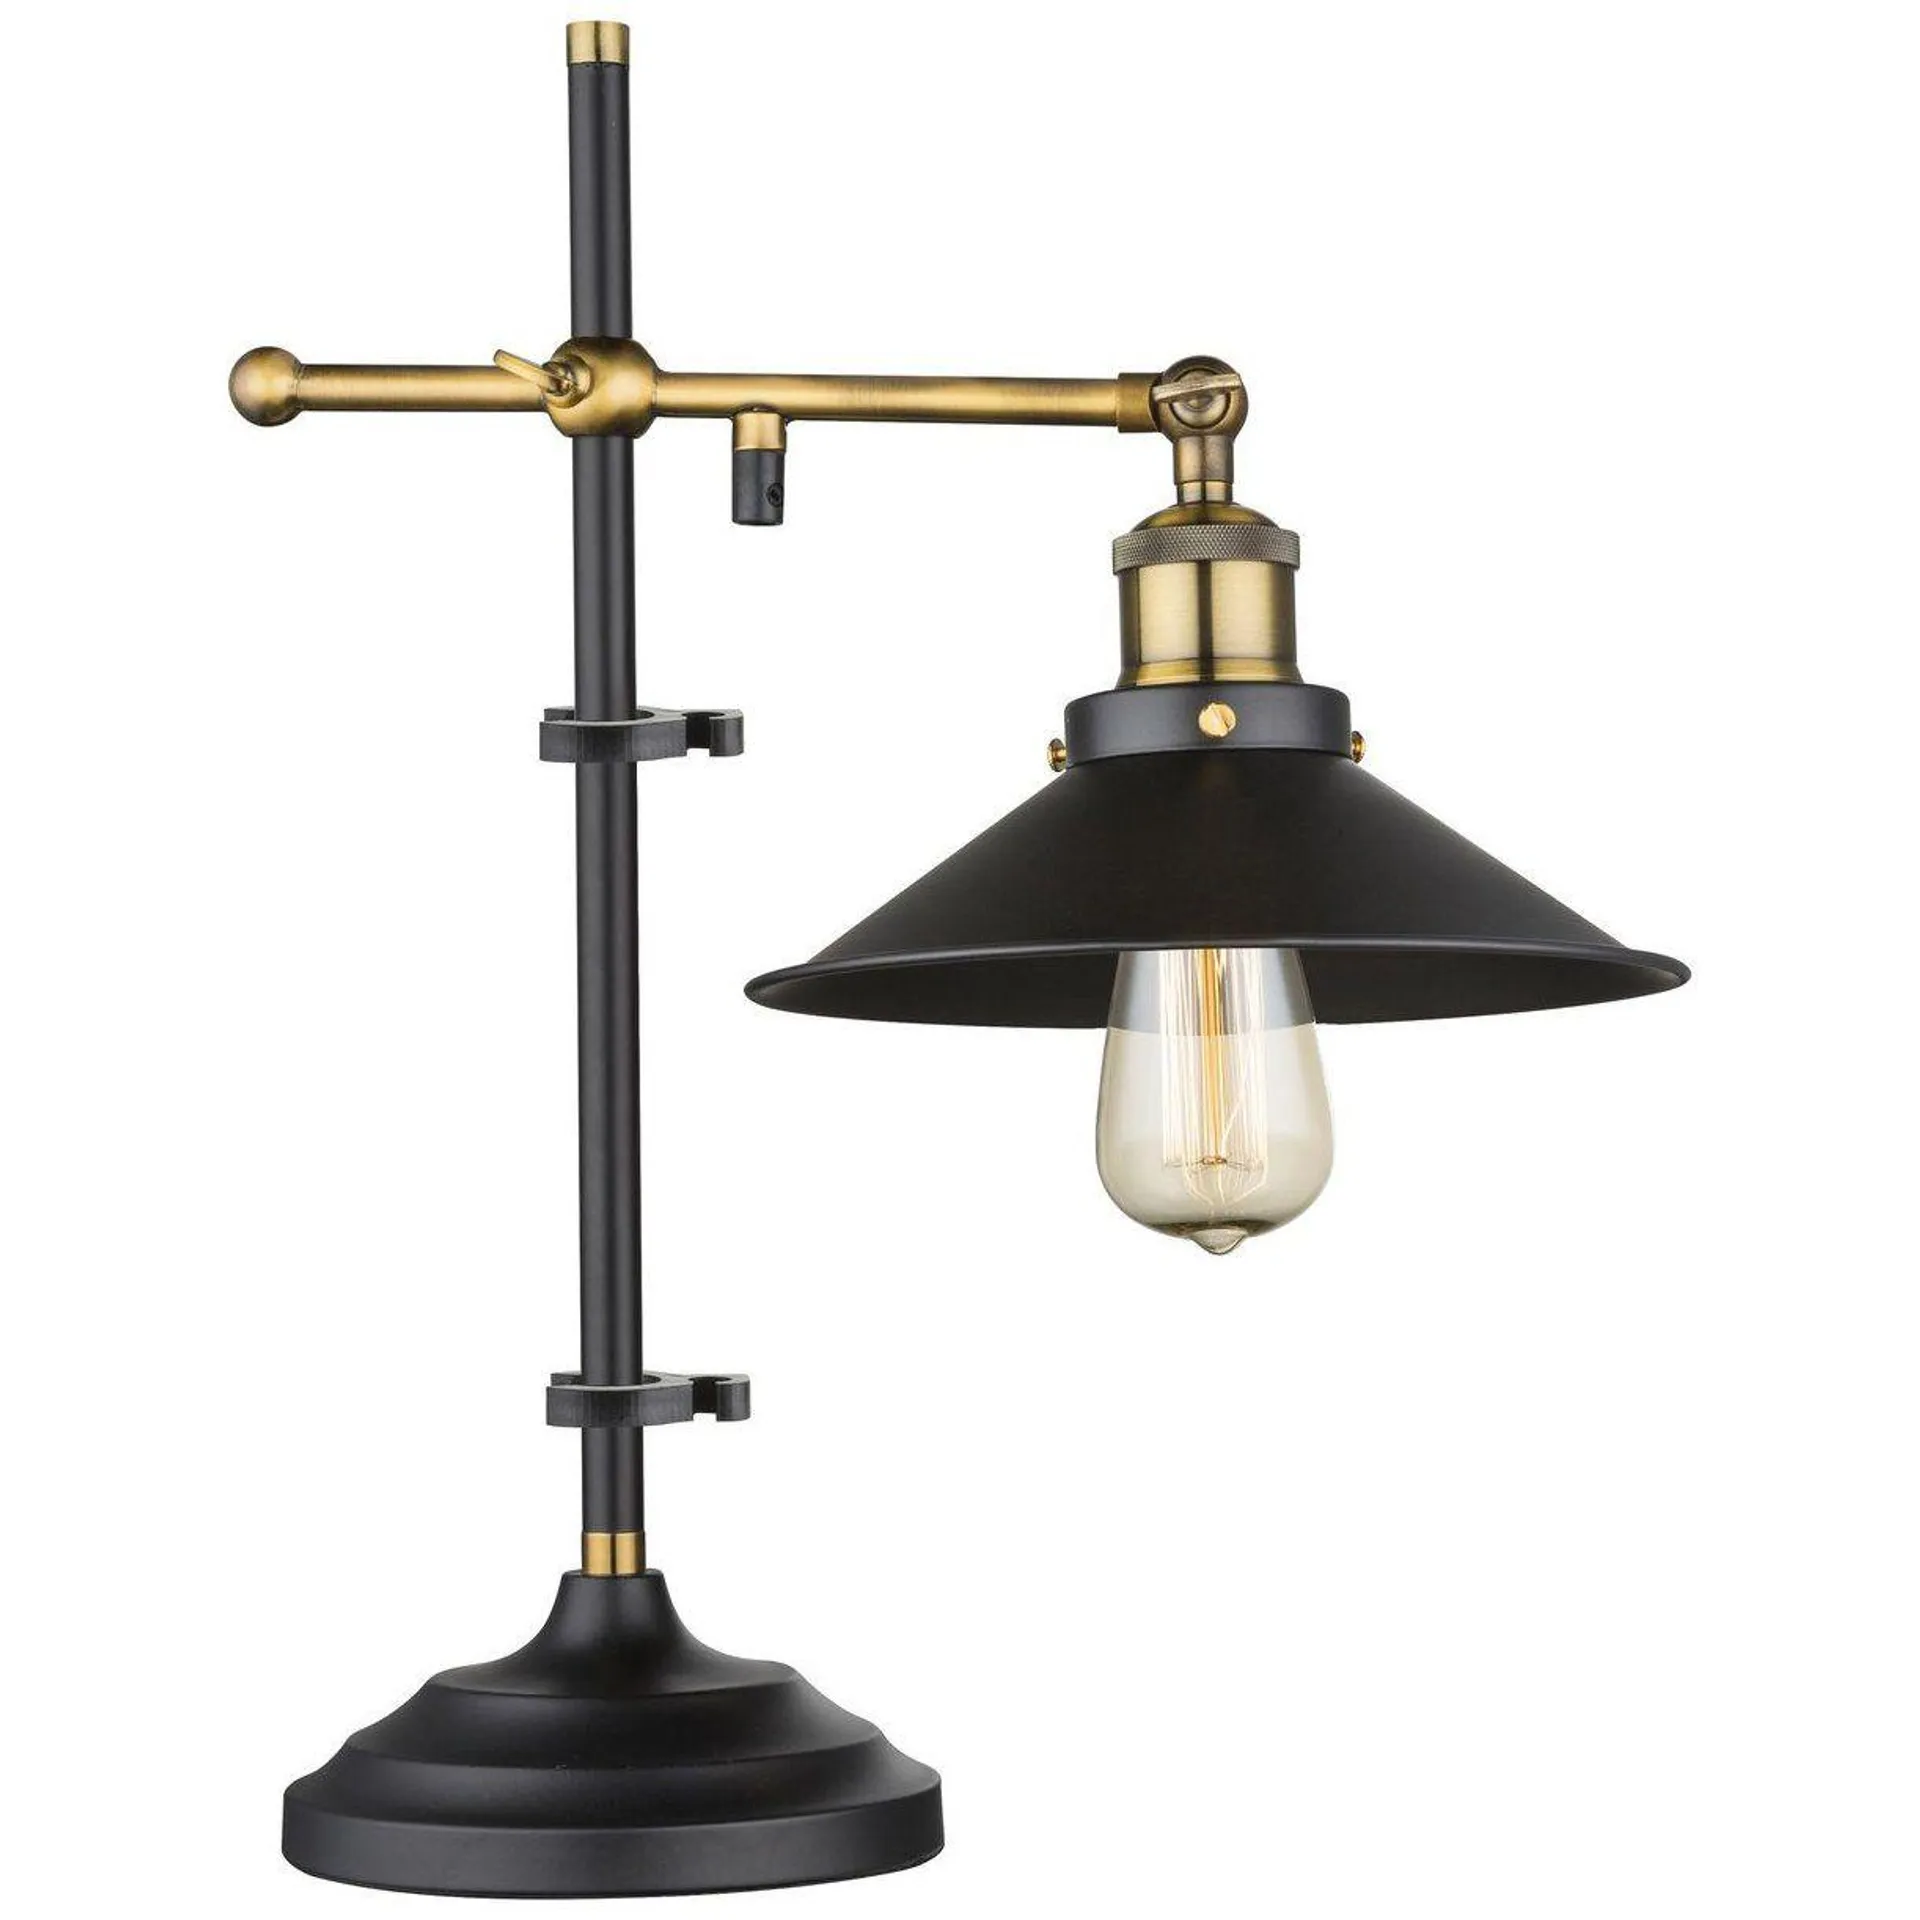 Lampe industrielle LENIUS noire et dorée en métal